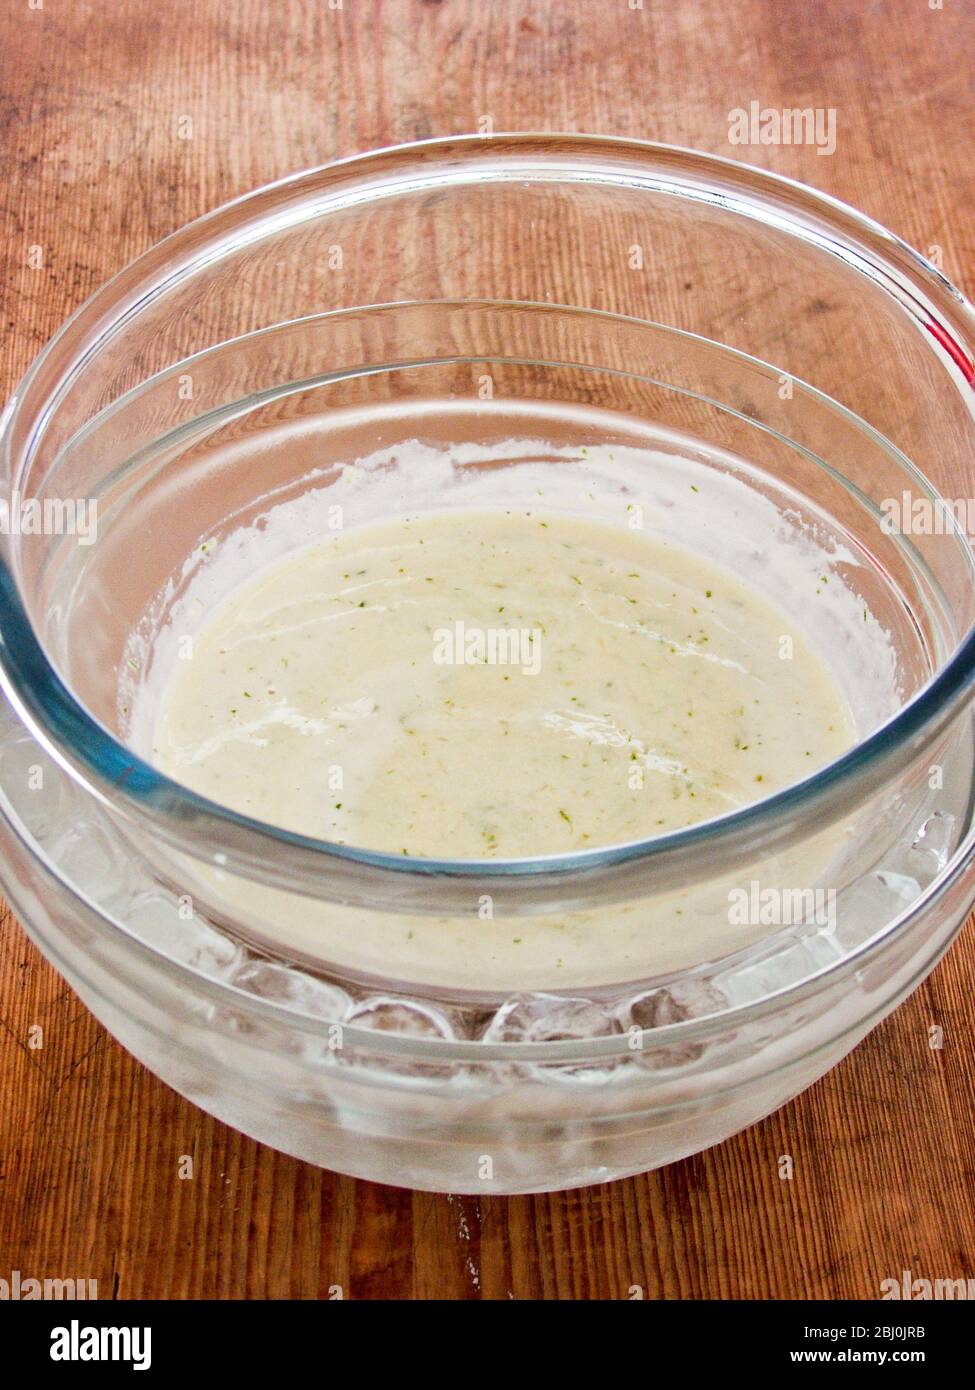 Crema di crema addensata con gelatina e glime Zest raffreddando in una ciotola che riposa in una ciotola più grande di acqua ghiacciata - Foto Stock